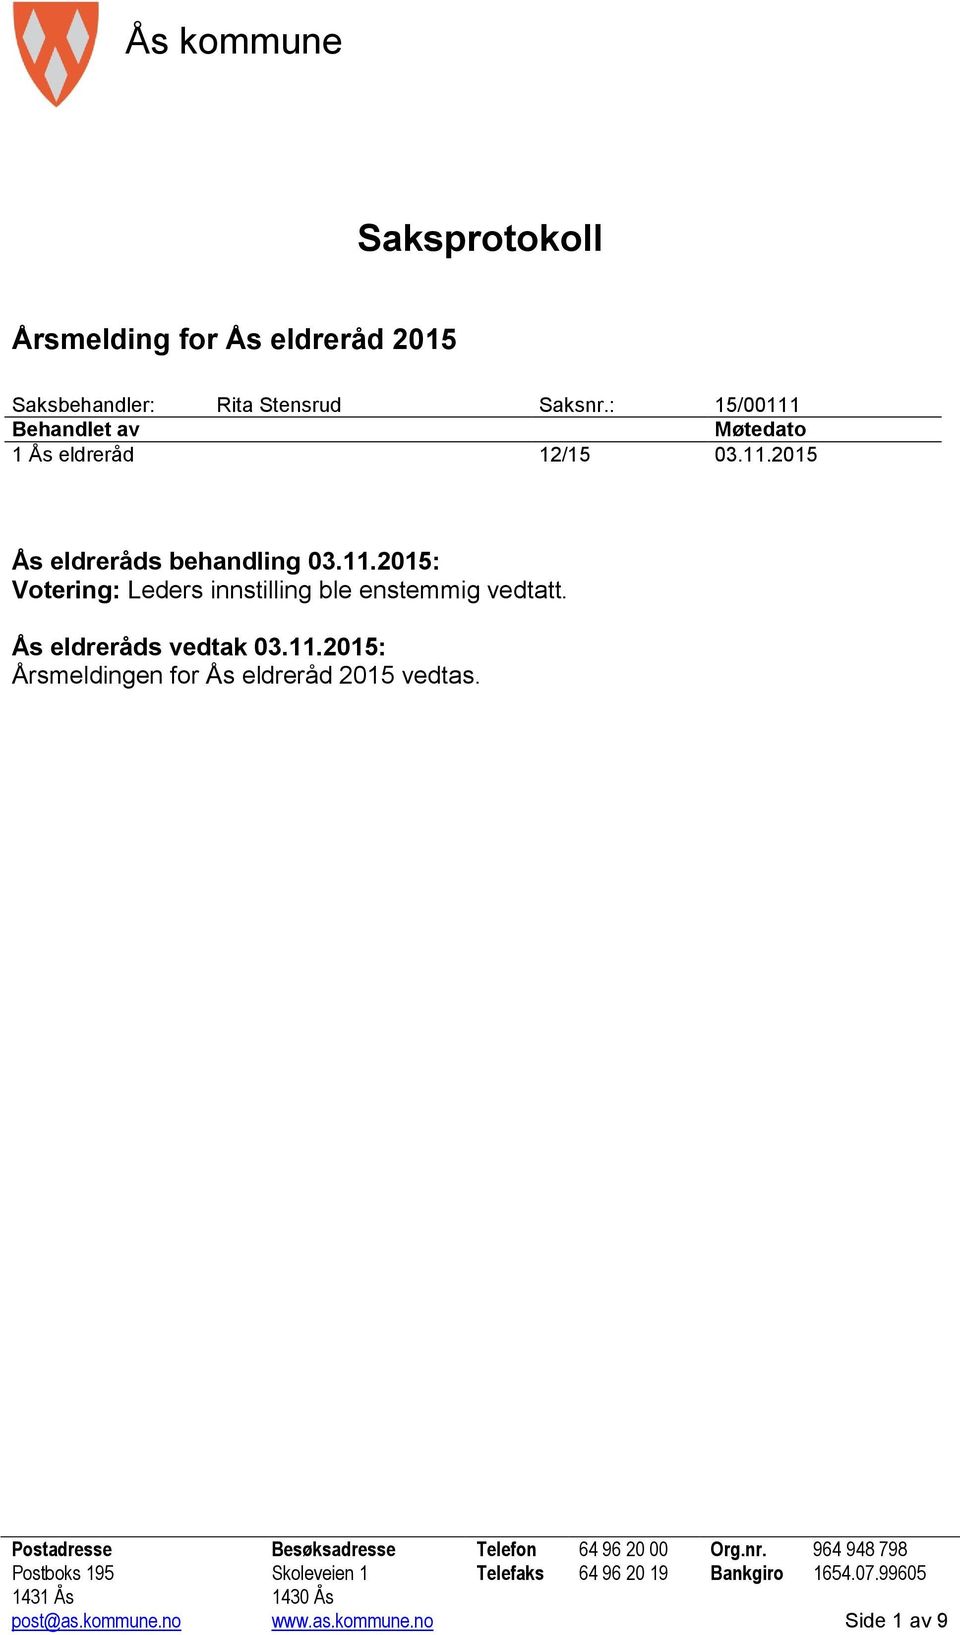 Ås eldreråds vedtak 03.11.2015: Årsmeldingen for Ås eldreråd 2015 vedtas. Postadresse Besøksadresse Telefon 64 96 20 00 Org.nr.